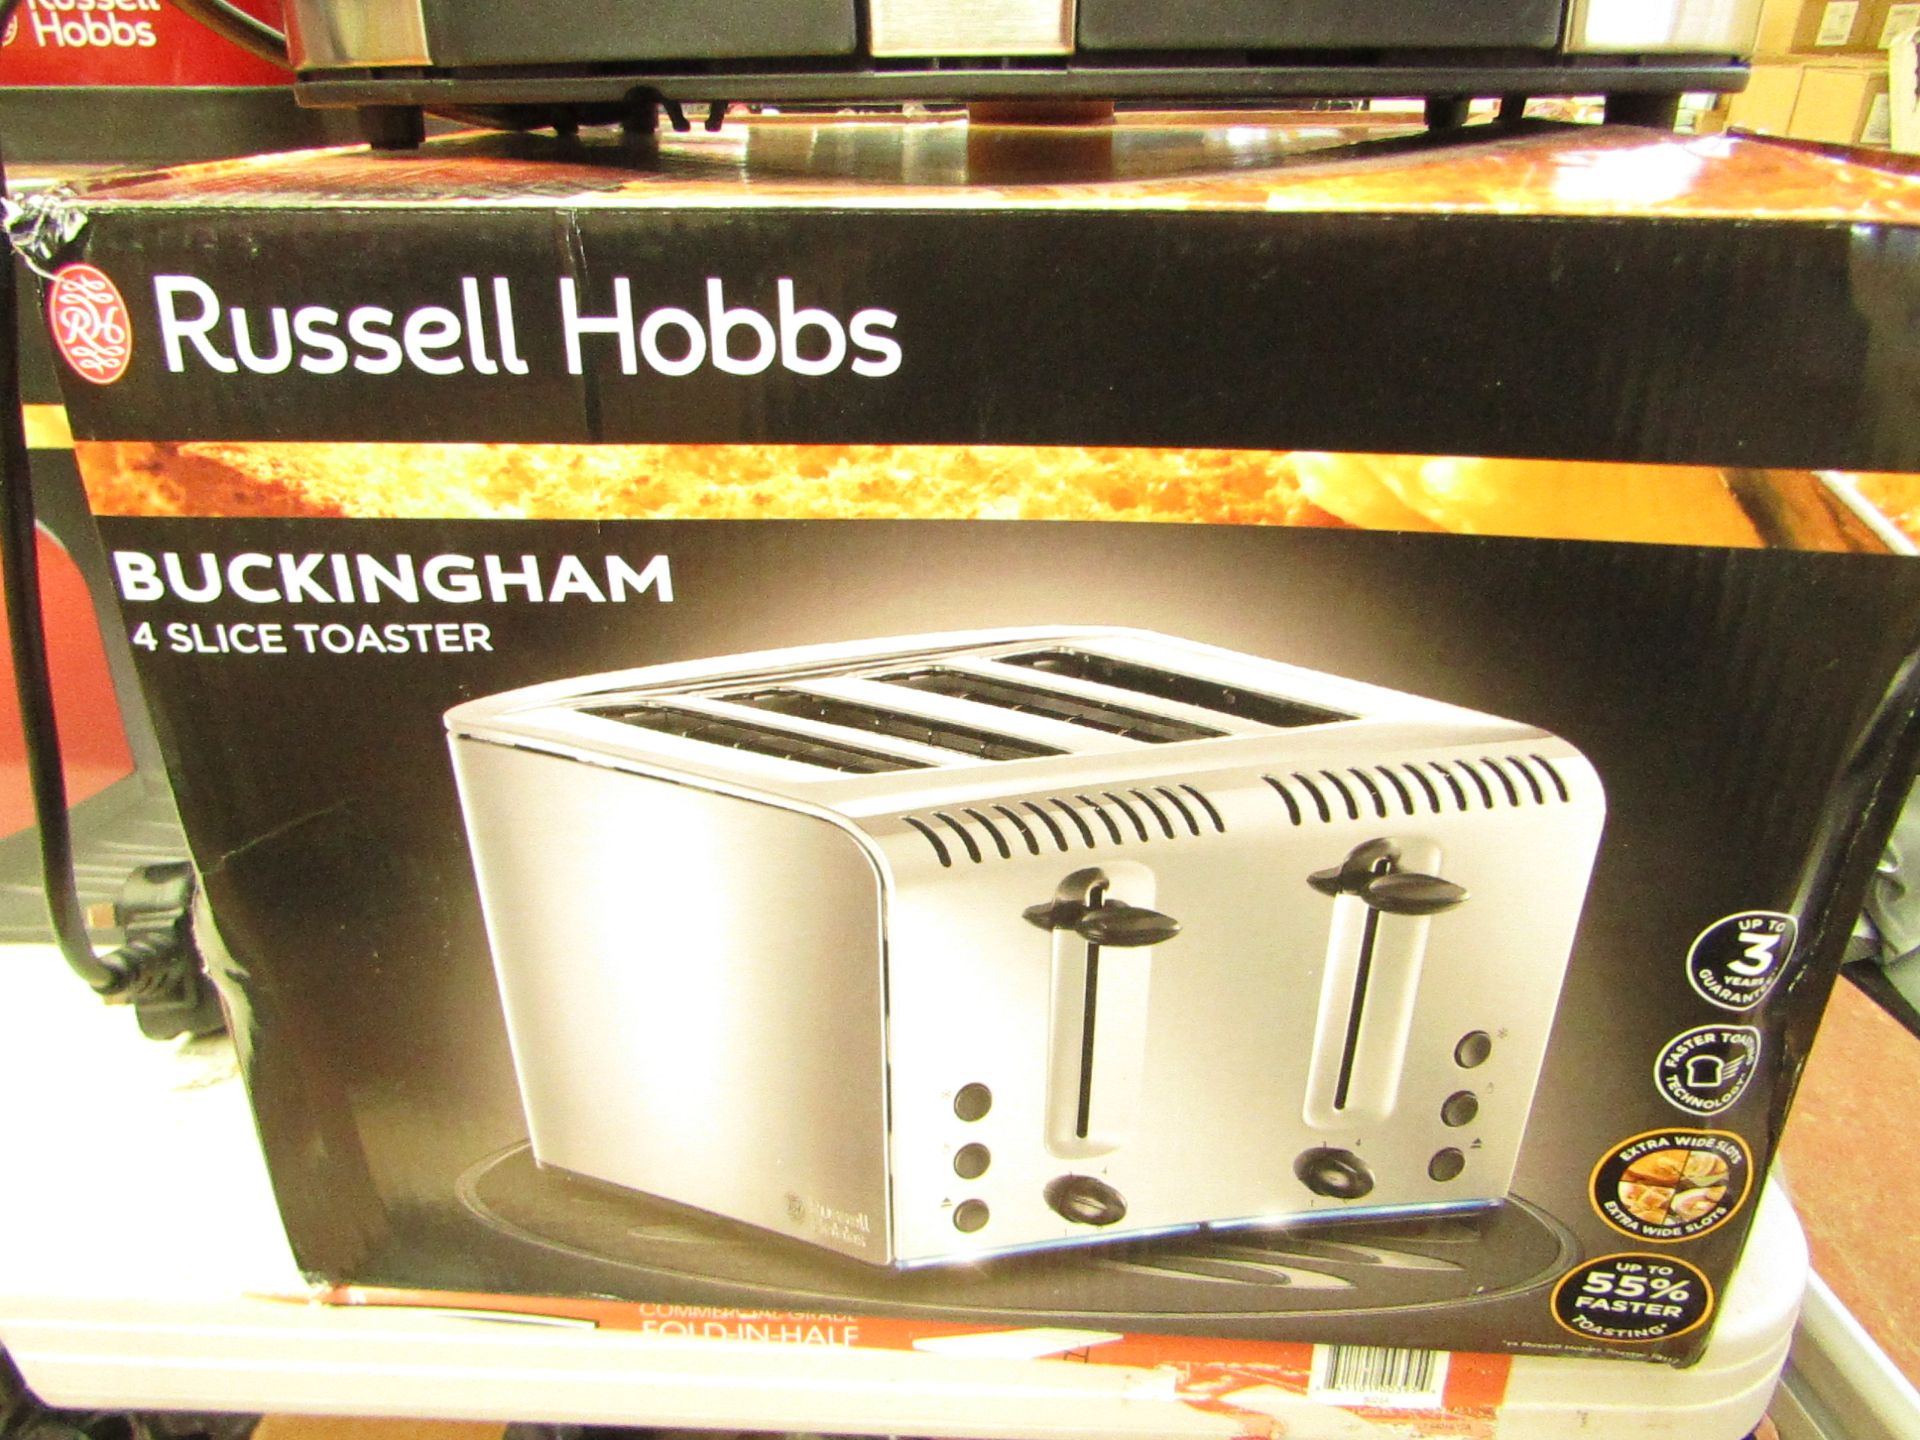 Russell Hobbs Buckingham 4 slice toaster, unused and boxed.